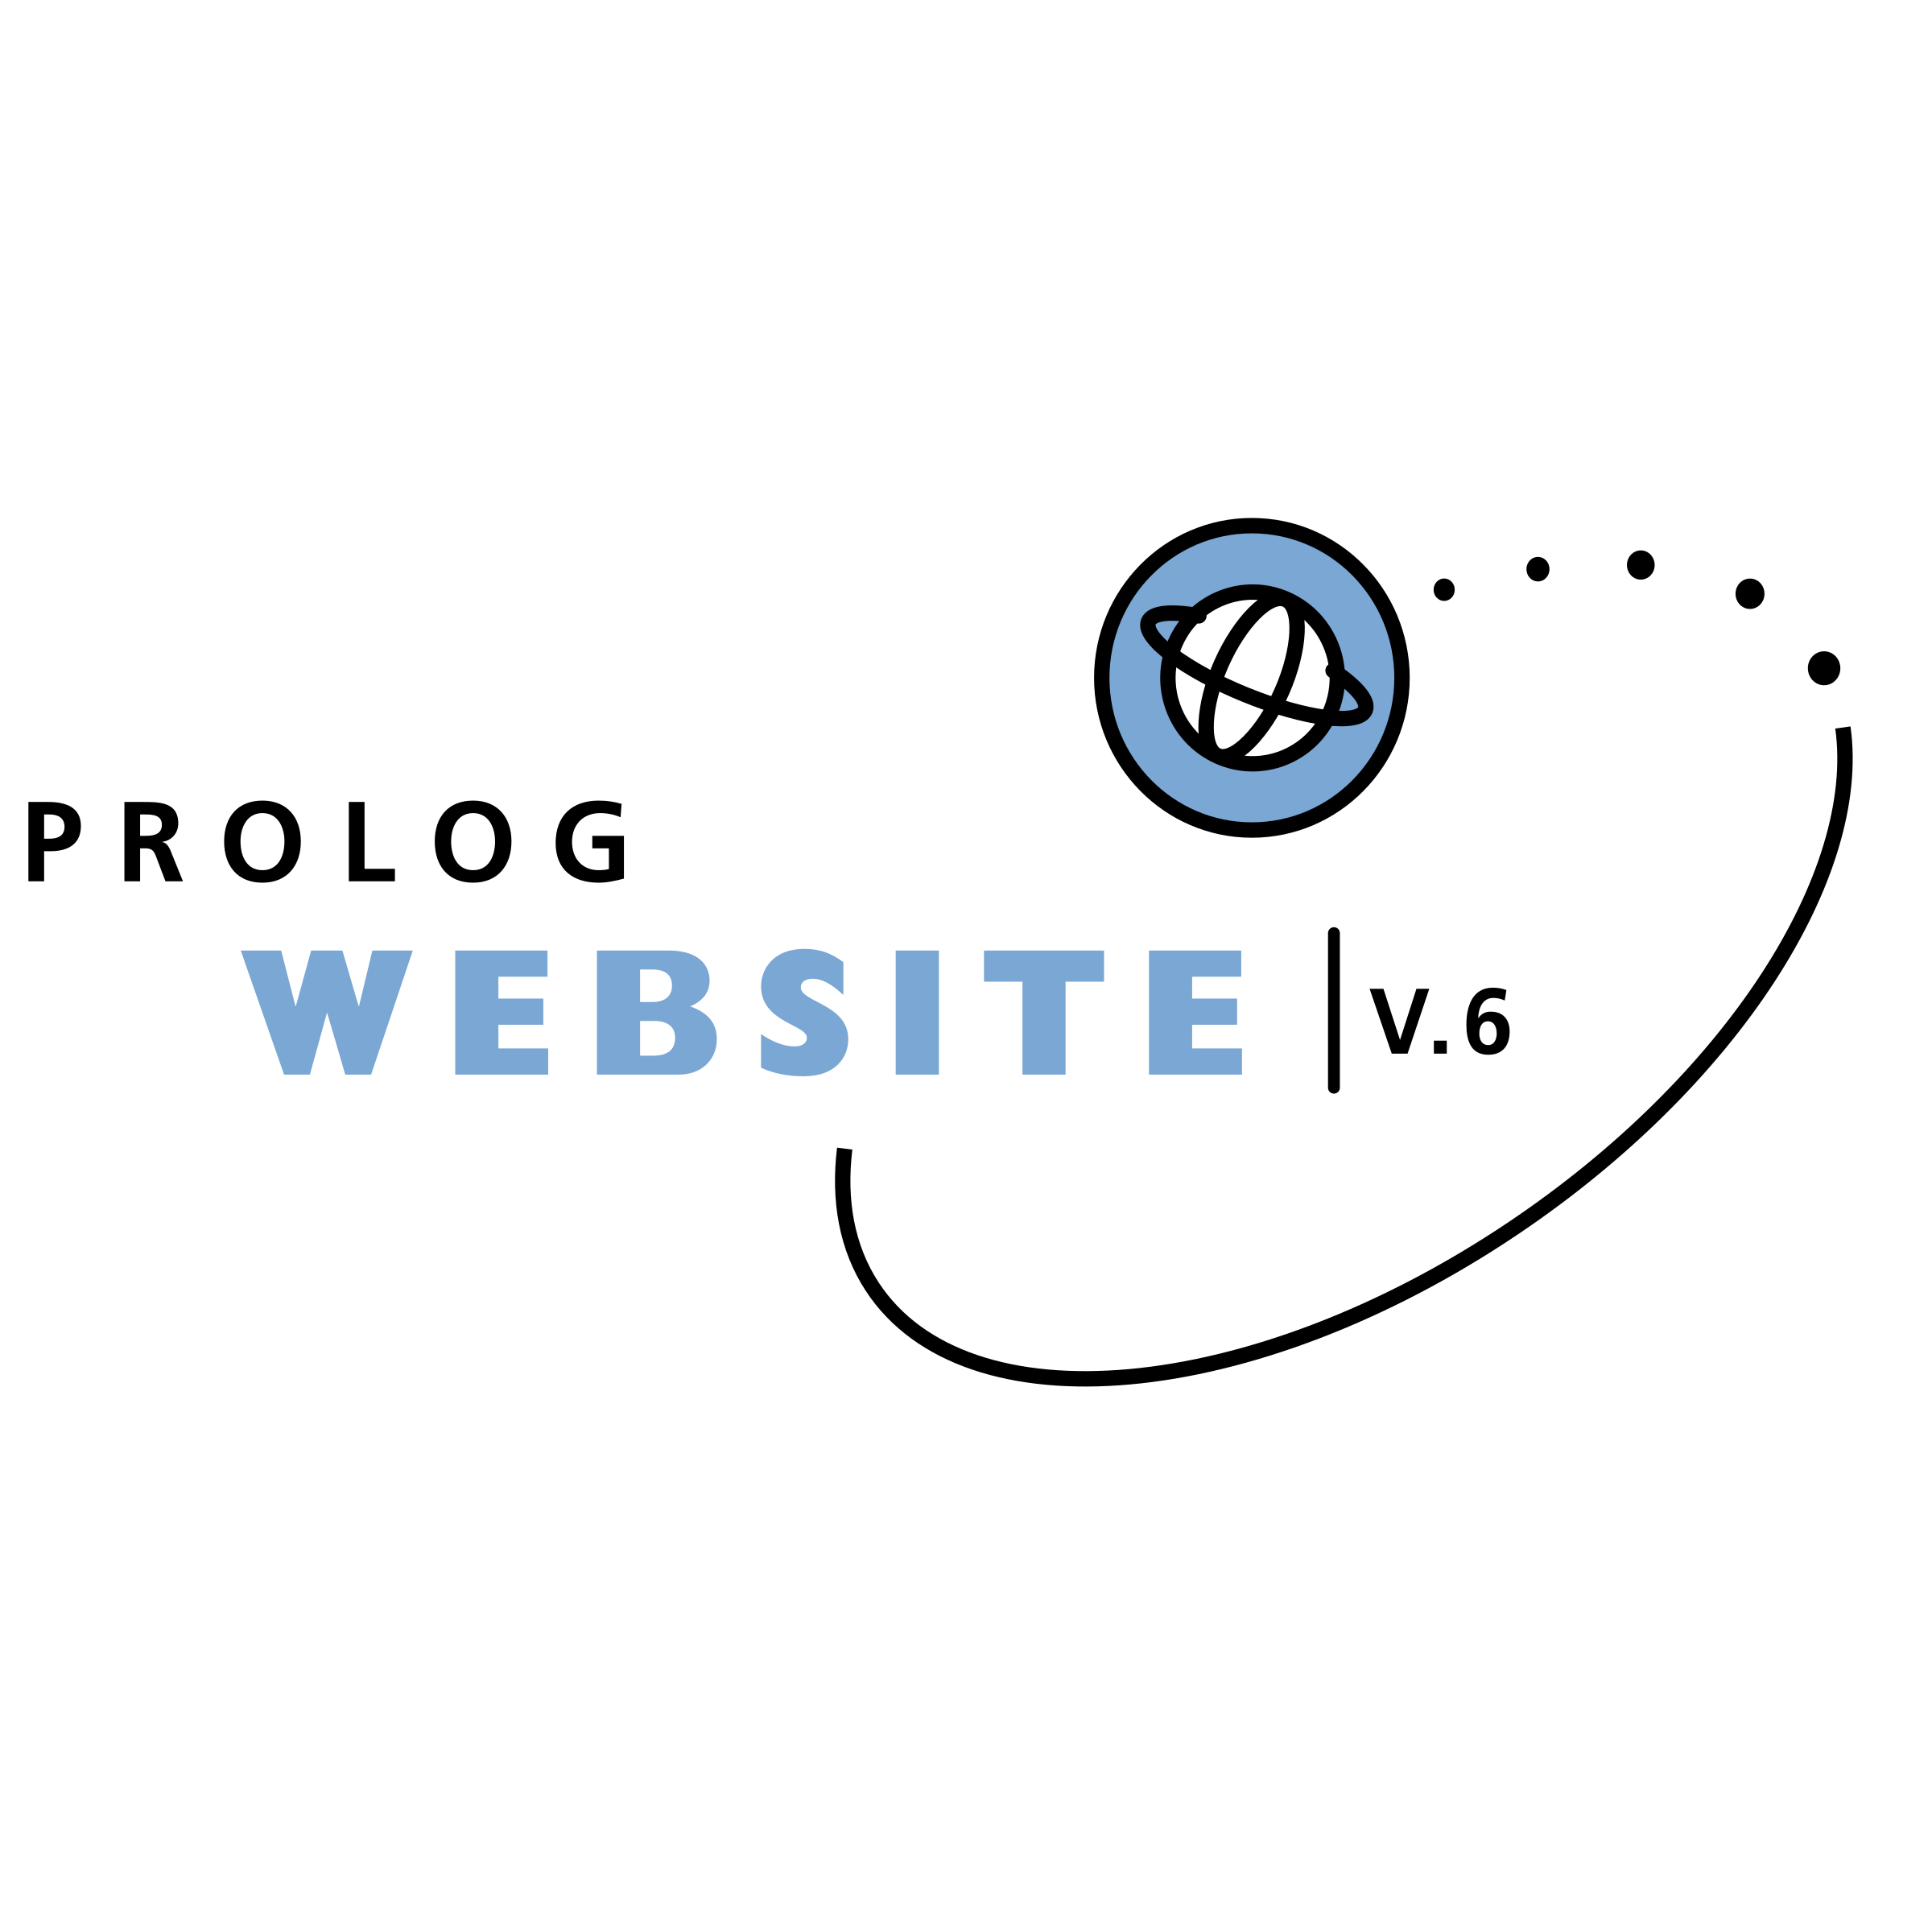 Prolog Logo - Prolog Website Logo PNG Transparent & SVG Vector